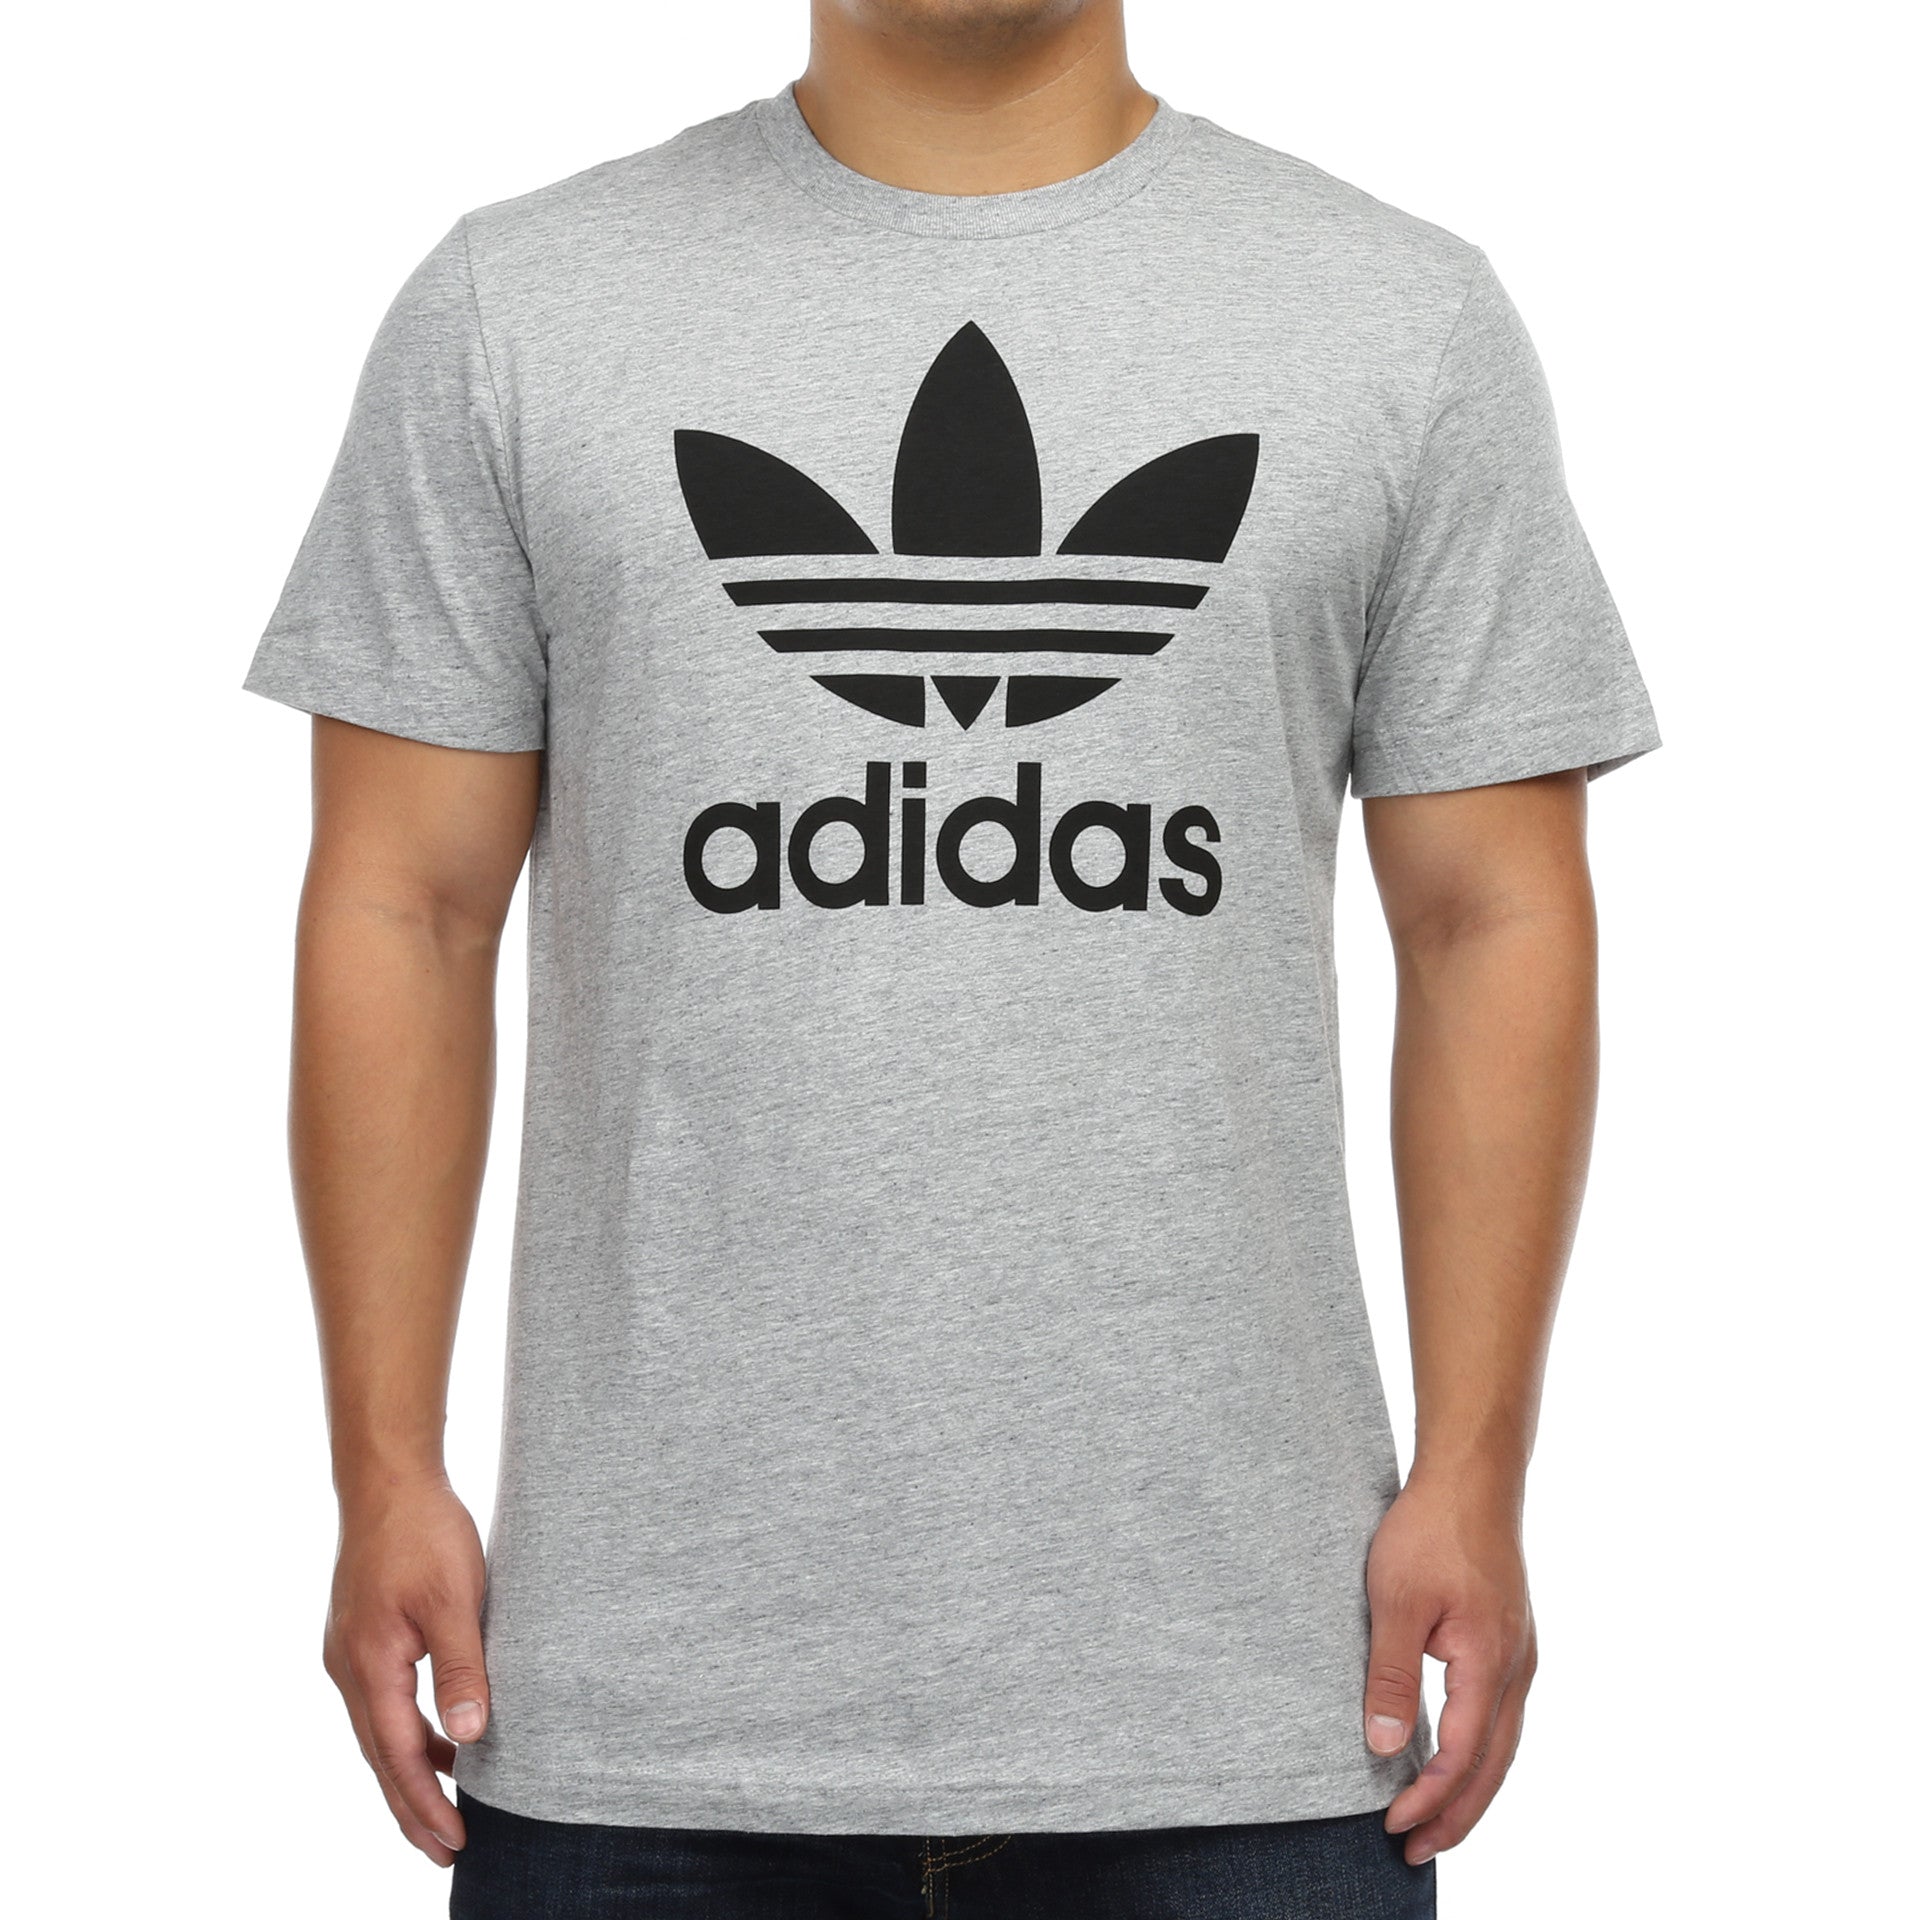  adidas 60/40 Men's T-Shirt (Dark Grey Heather, Medium